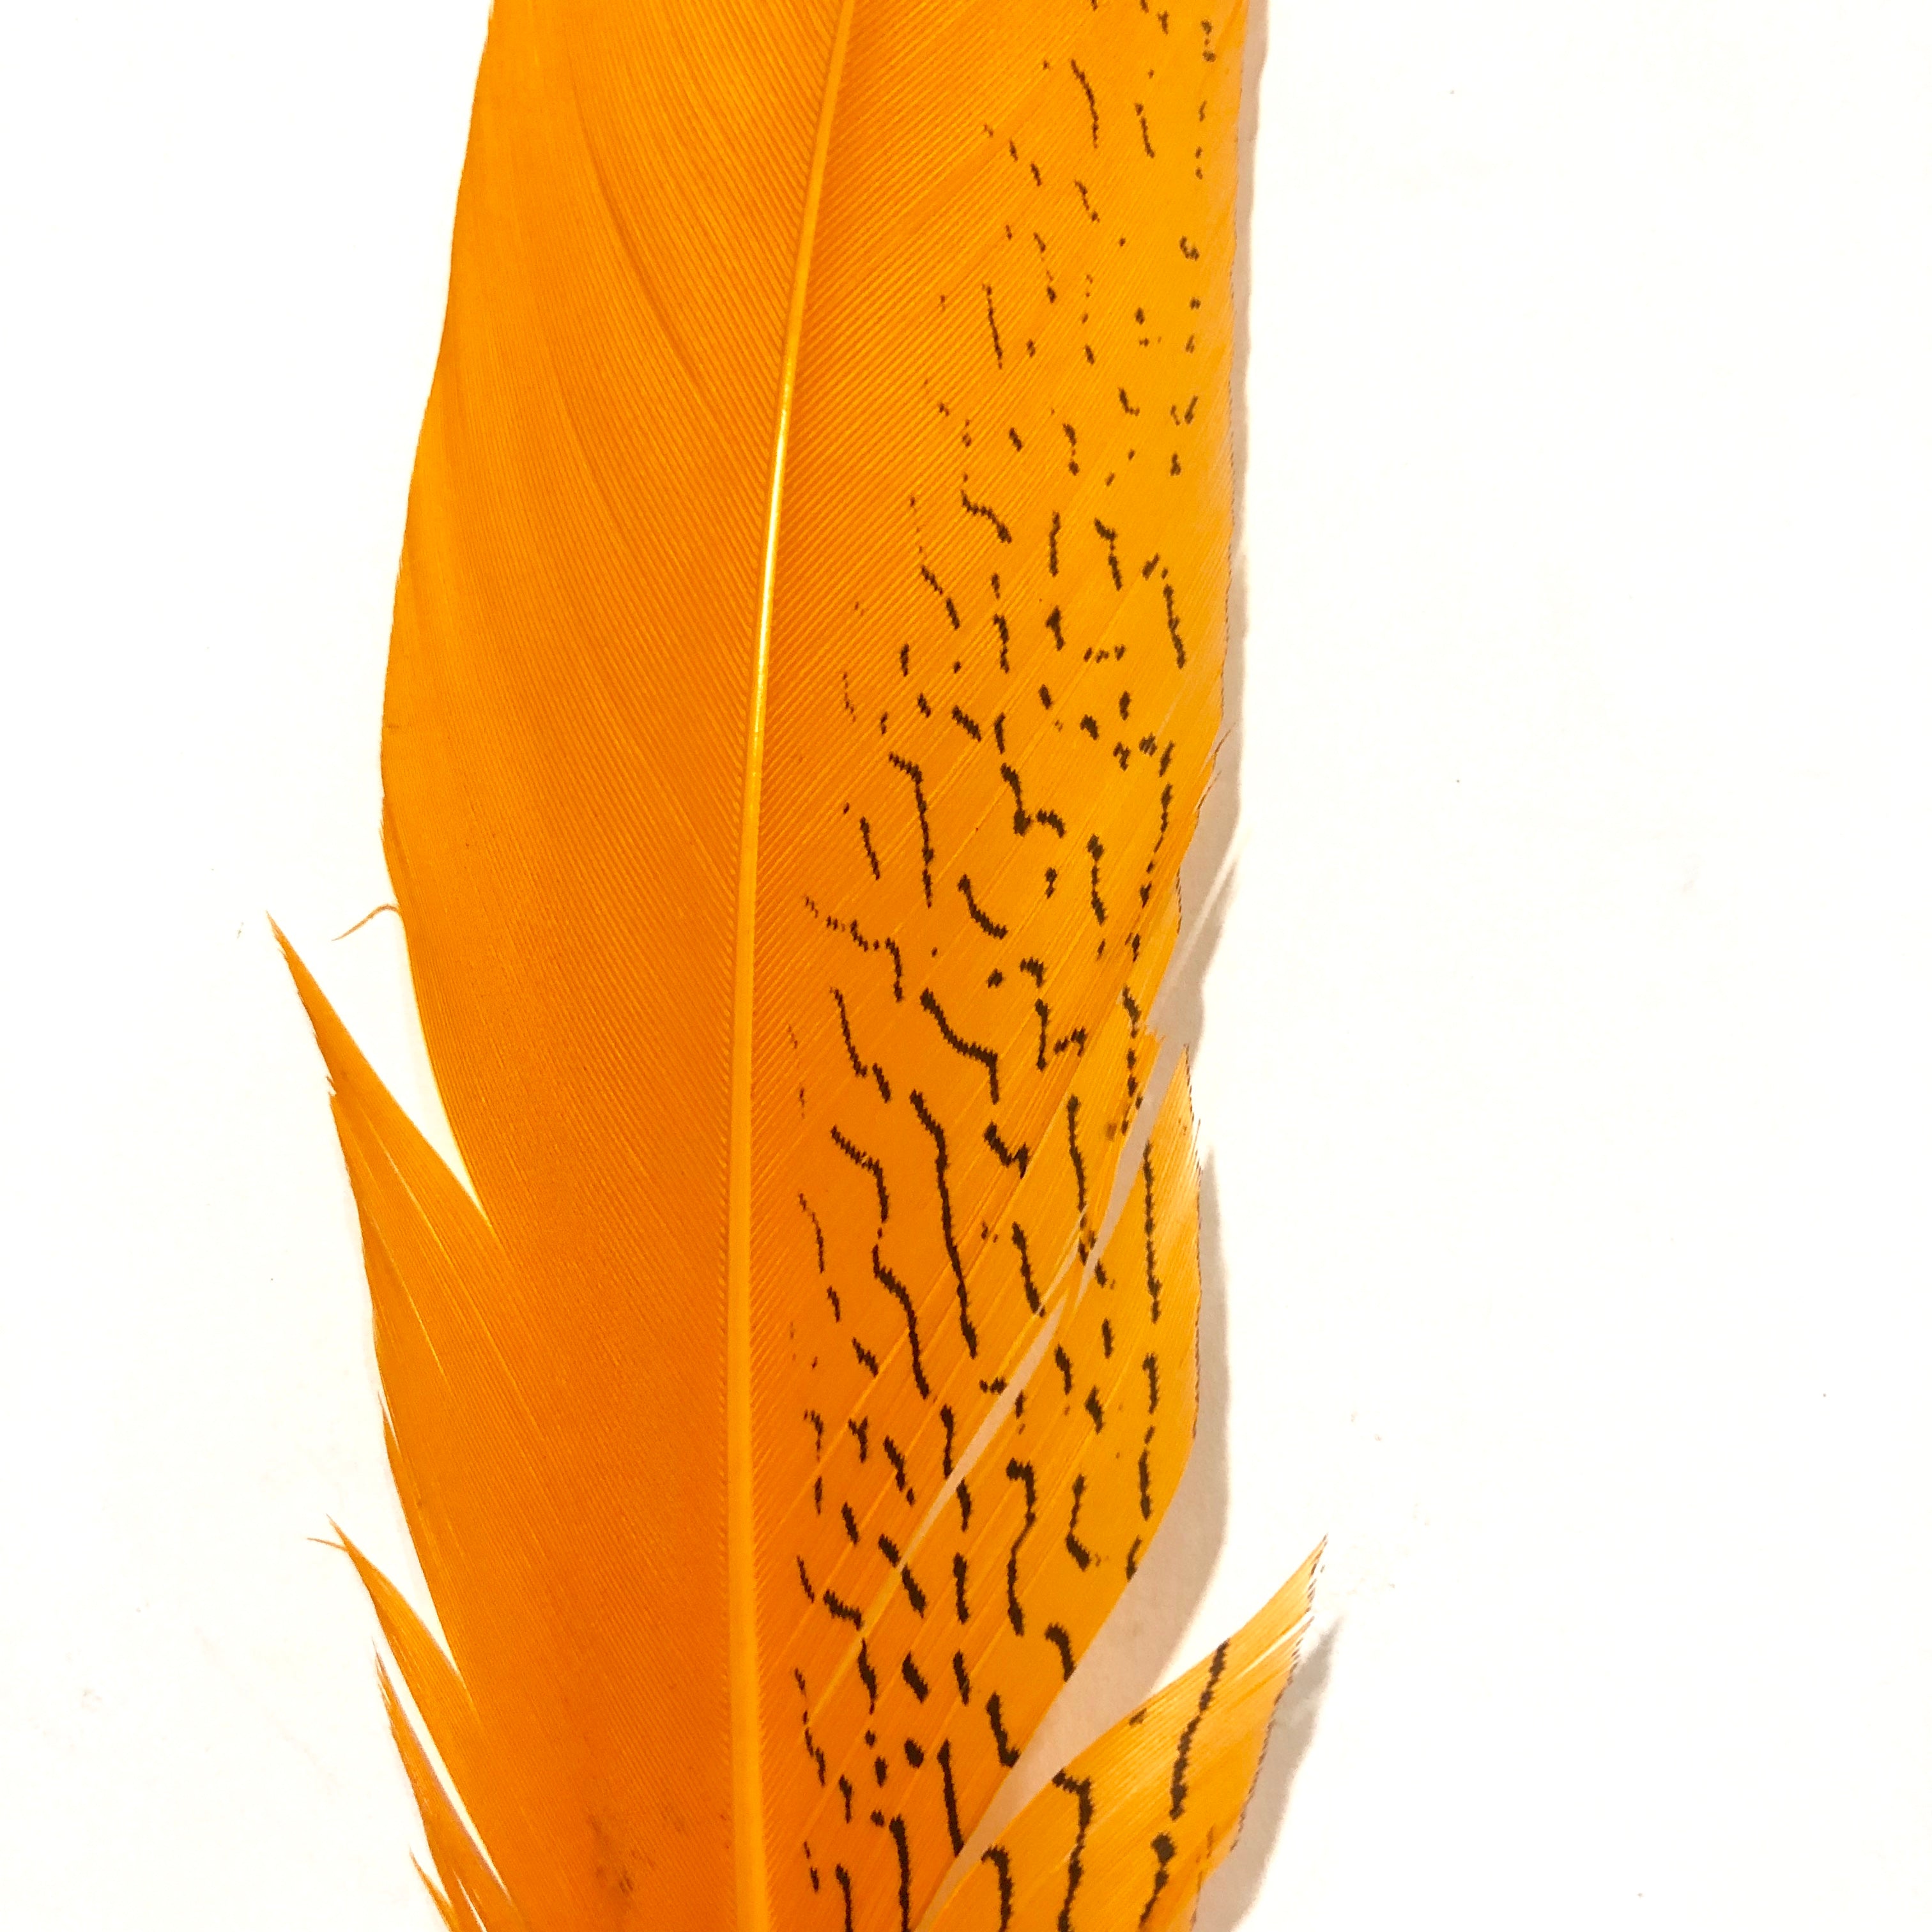 20" to 30" Silver Pheasant Tail Feather - Orange